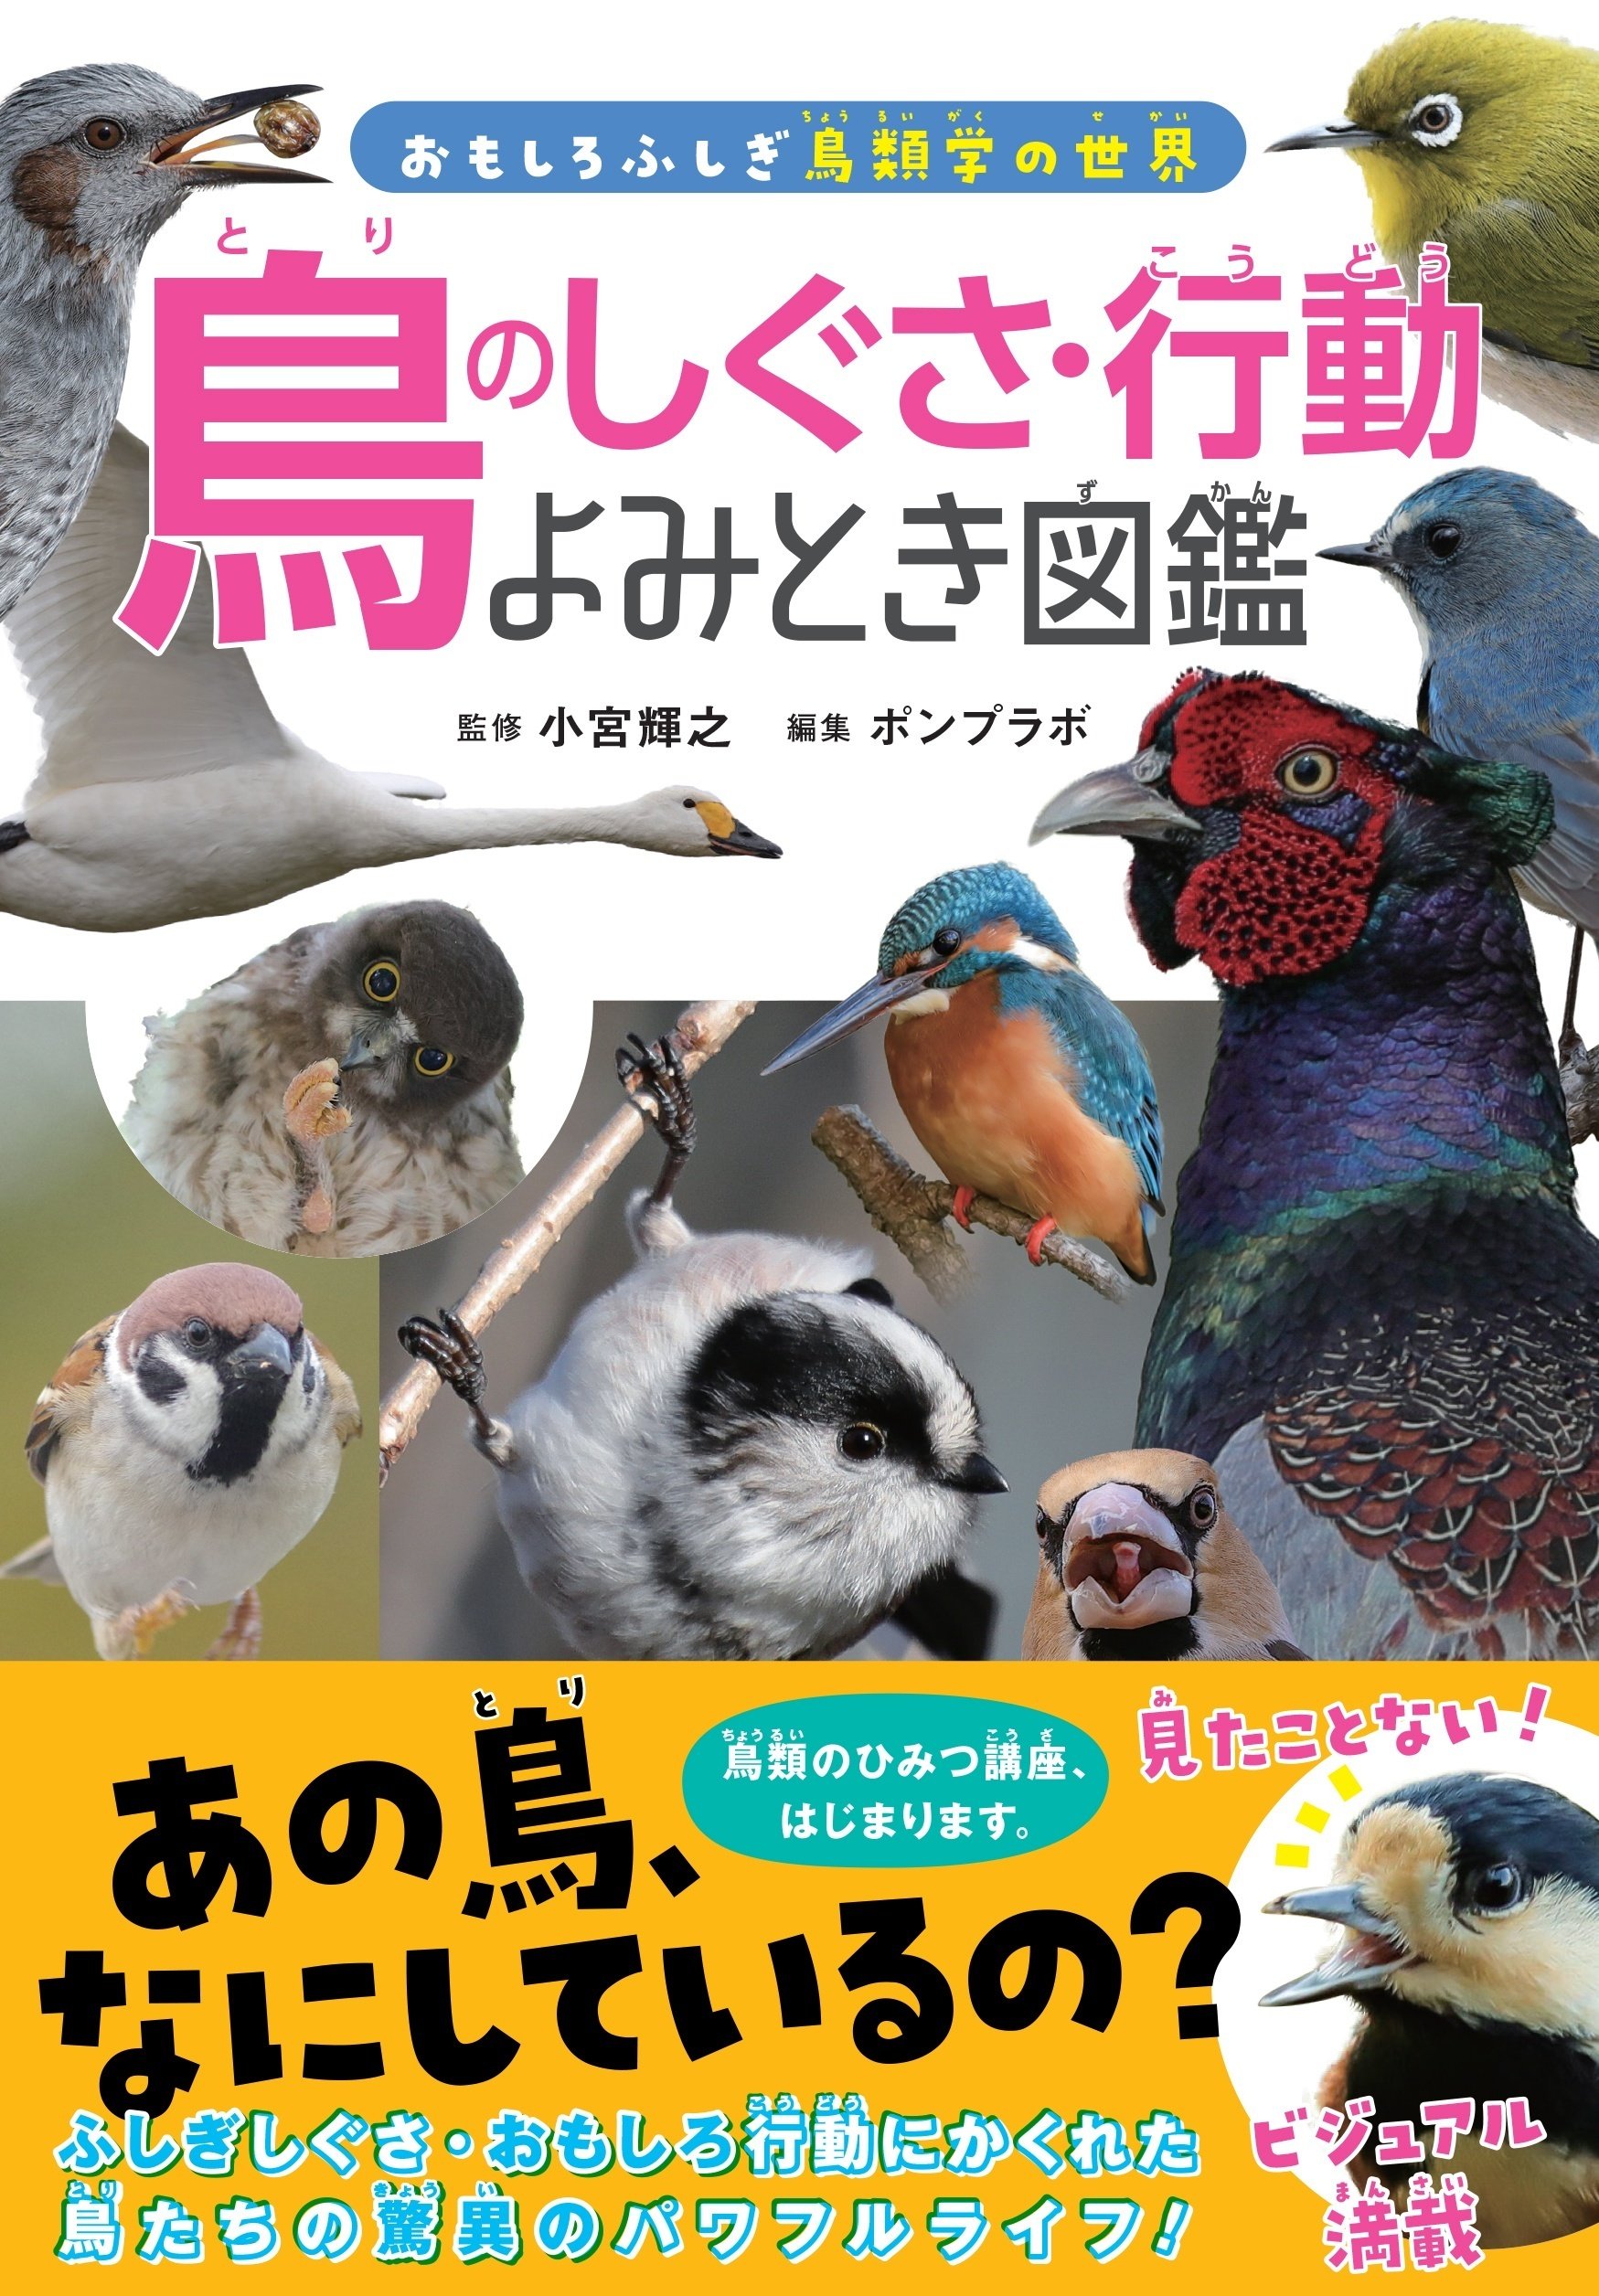 おもしろふしぎ鳥類学の世界」鳥たちの行動しぐさから生態が学べる ...